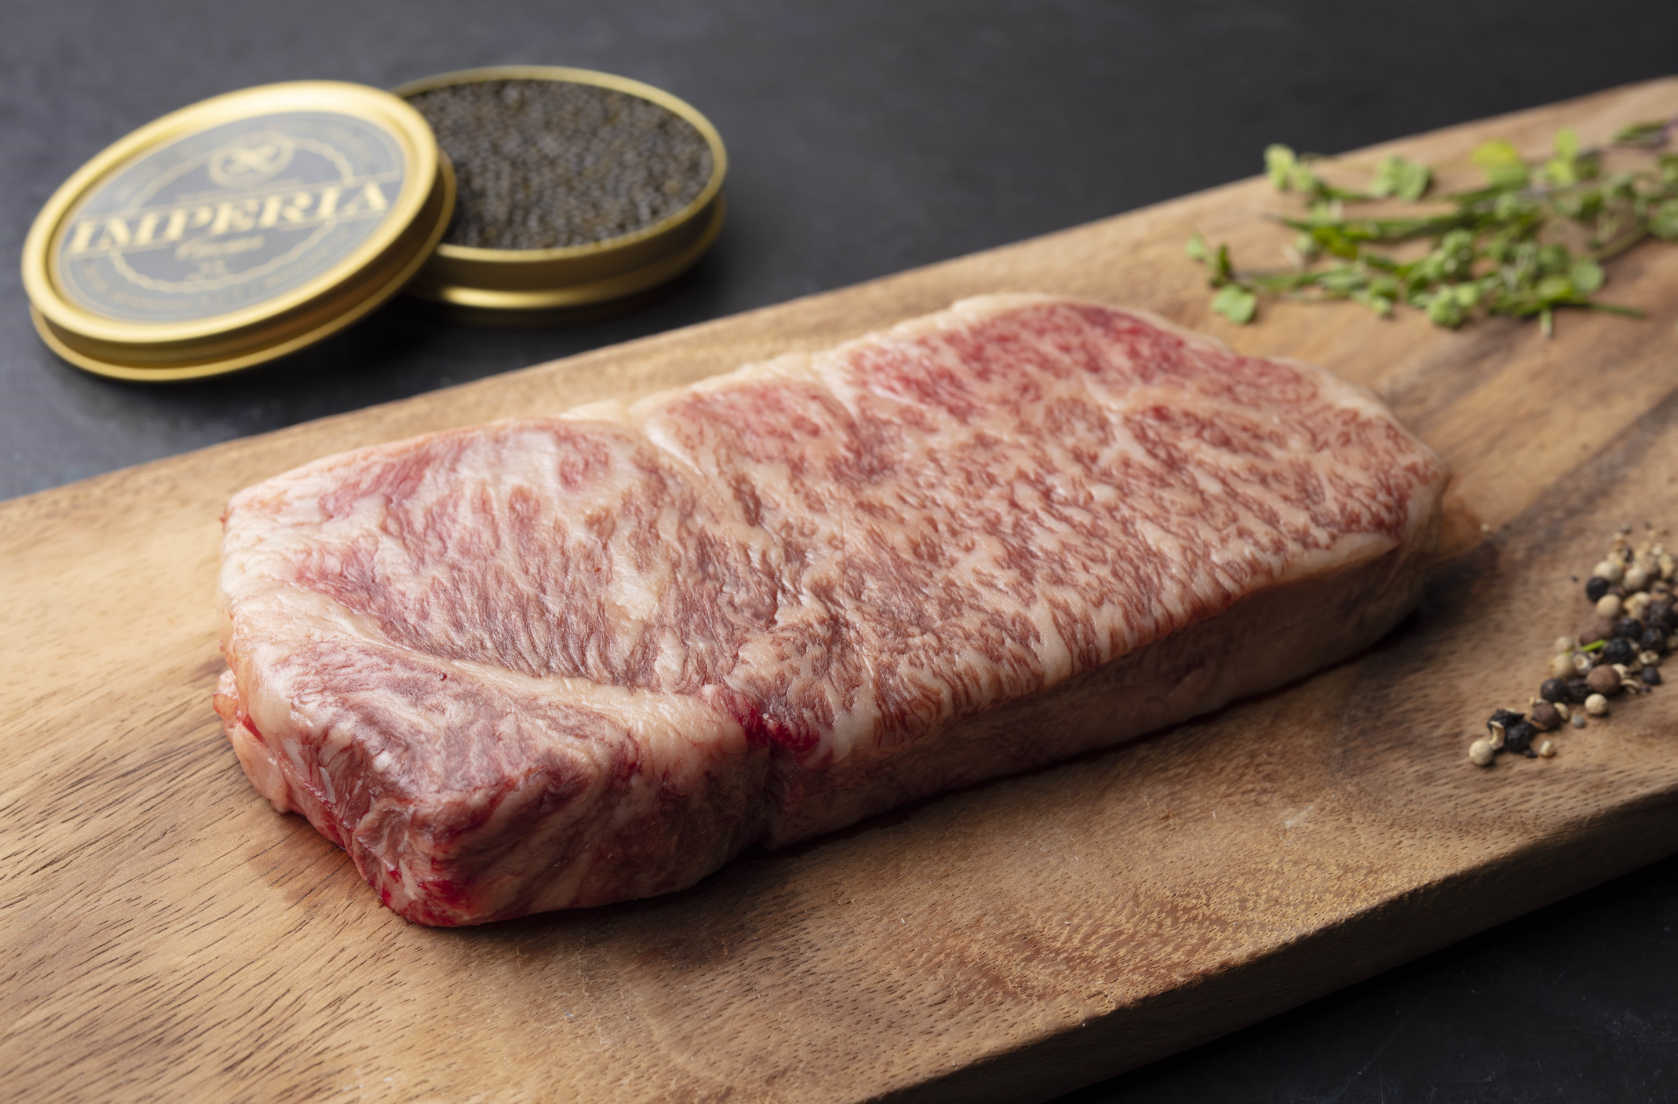 Japanese A5 Wagyu - Striploin Steak